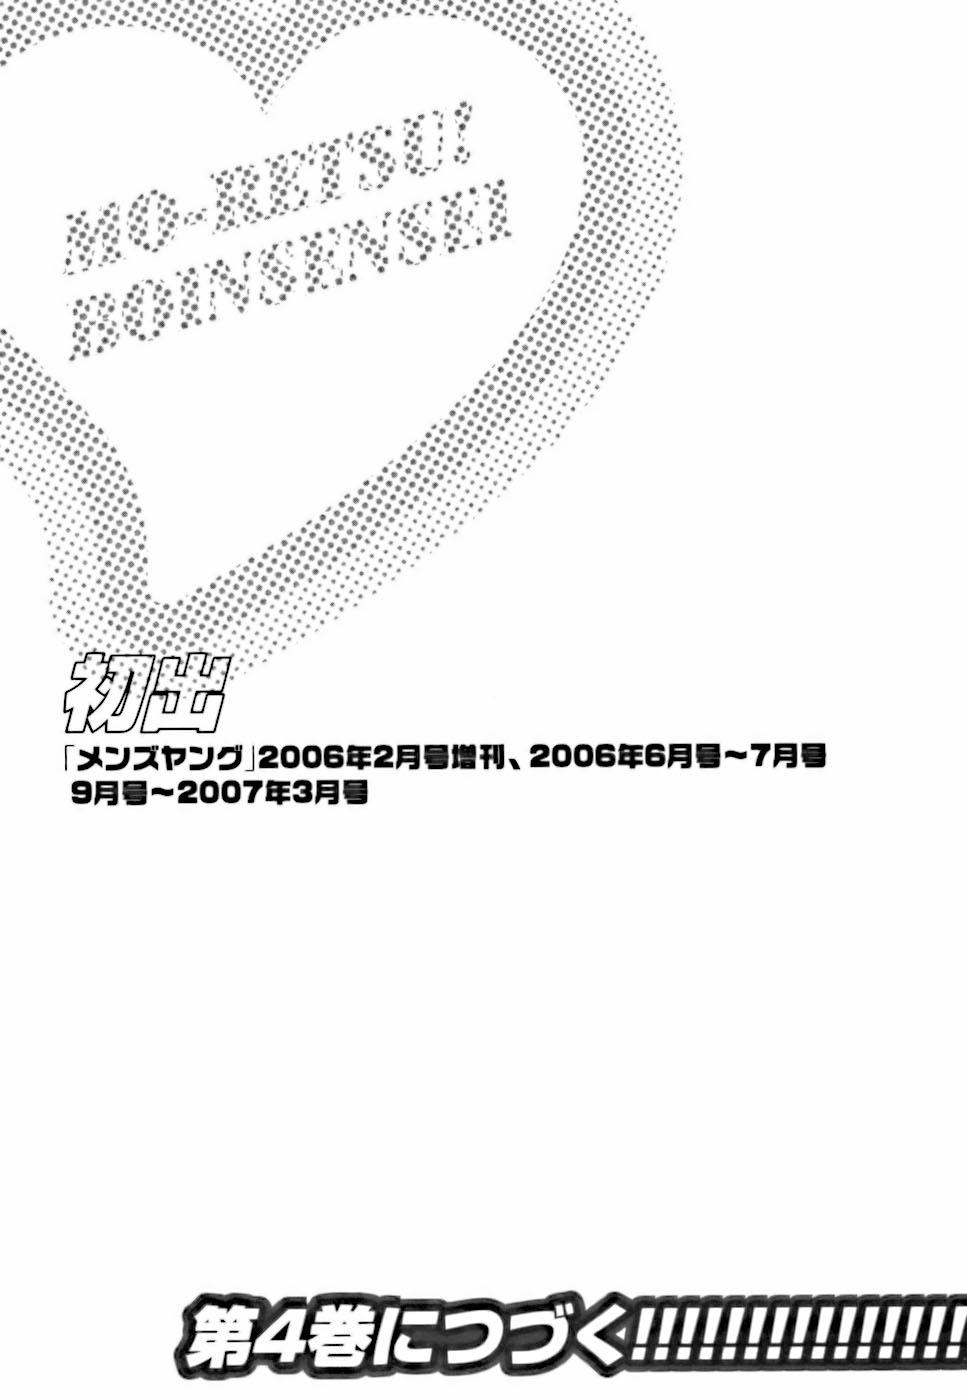 [Hidemaru] Mo-Retsu! Boin Sensei (Boing Boing Teacher) Vol.3 191